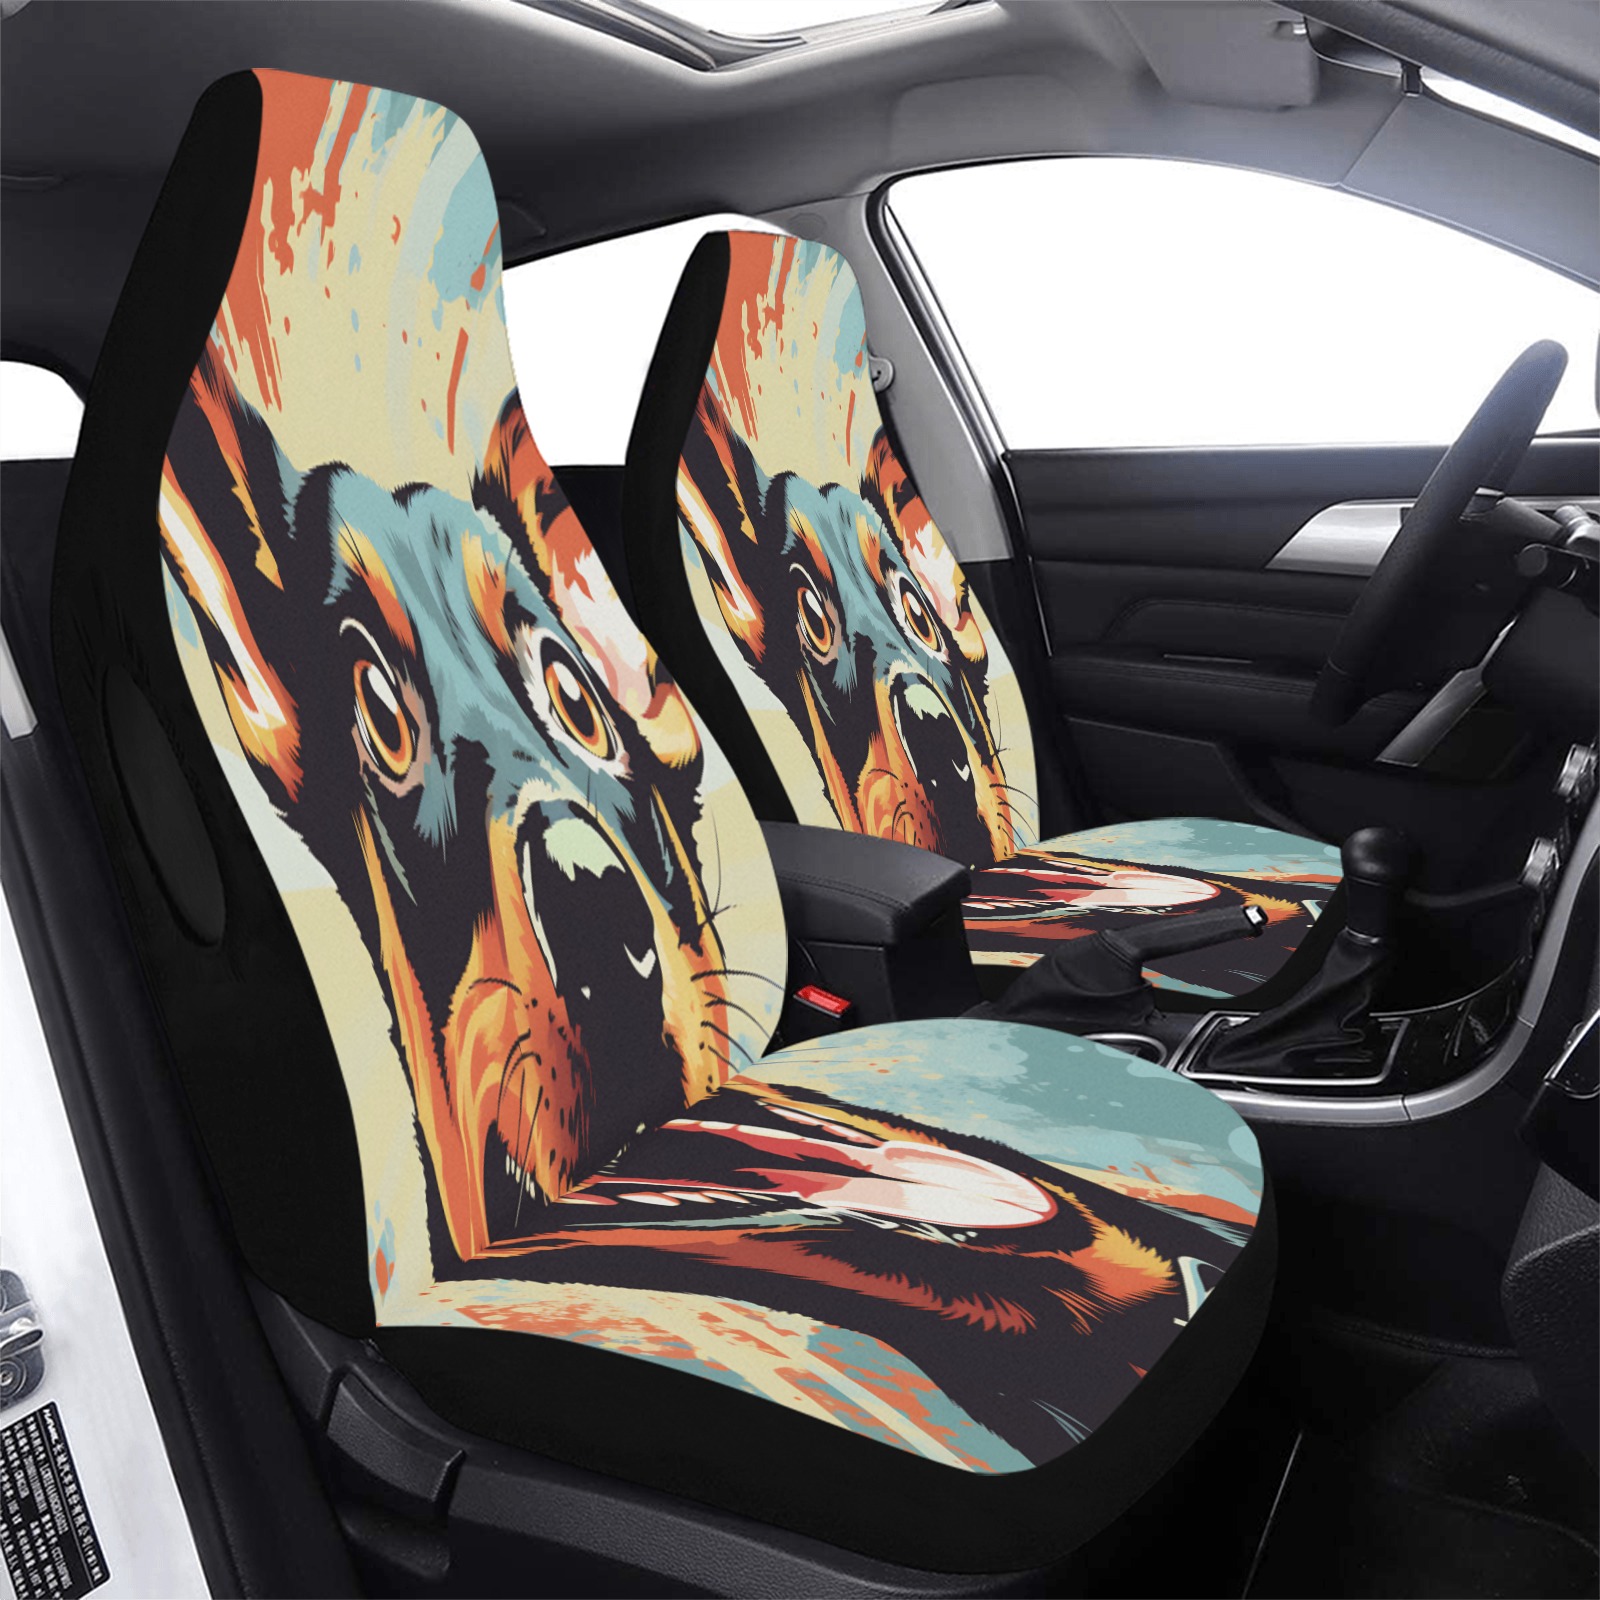 Doberman Pinscher Pop Art Car Seat Cover Airbag Compatible (Set of 2)